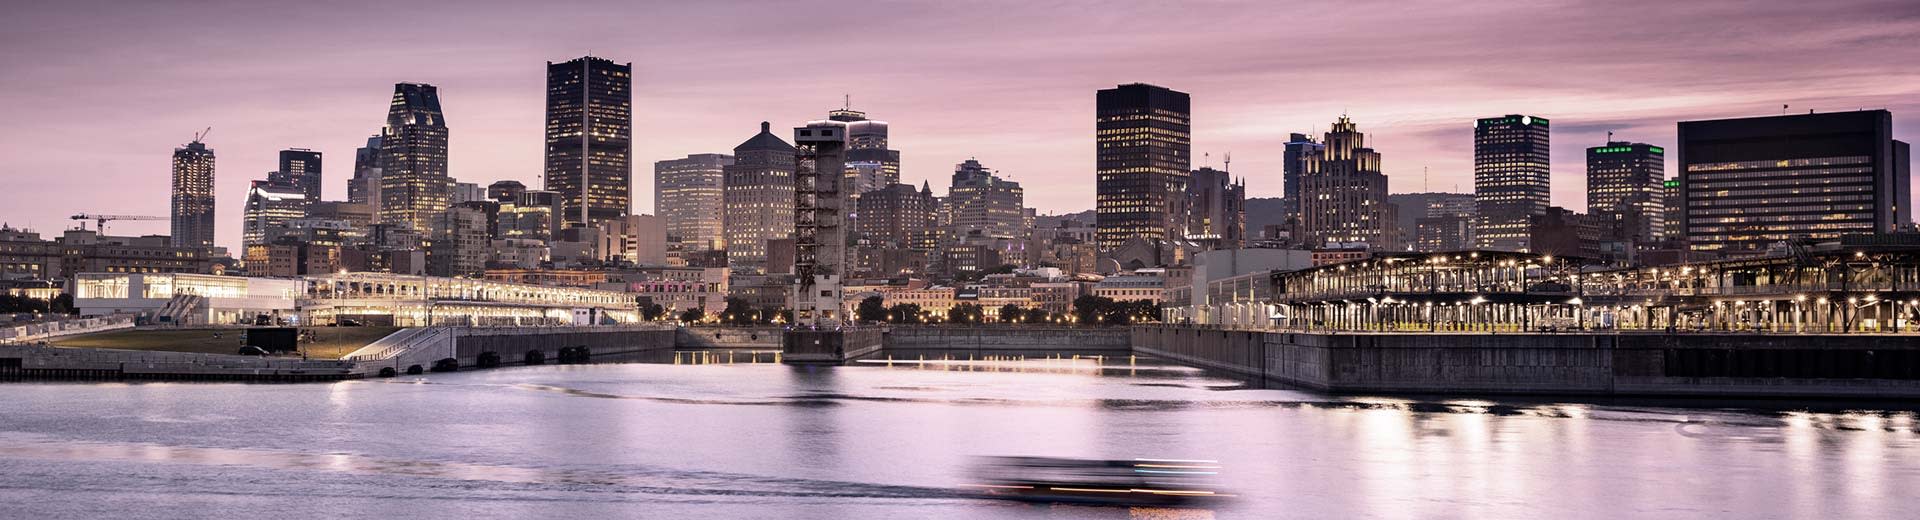 Contre un ciel violet, nous voyons les gratte-ciel du centre-ville de Montréal devant un plan d'eau sombre.		